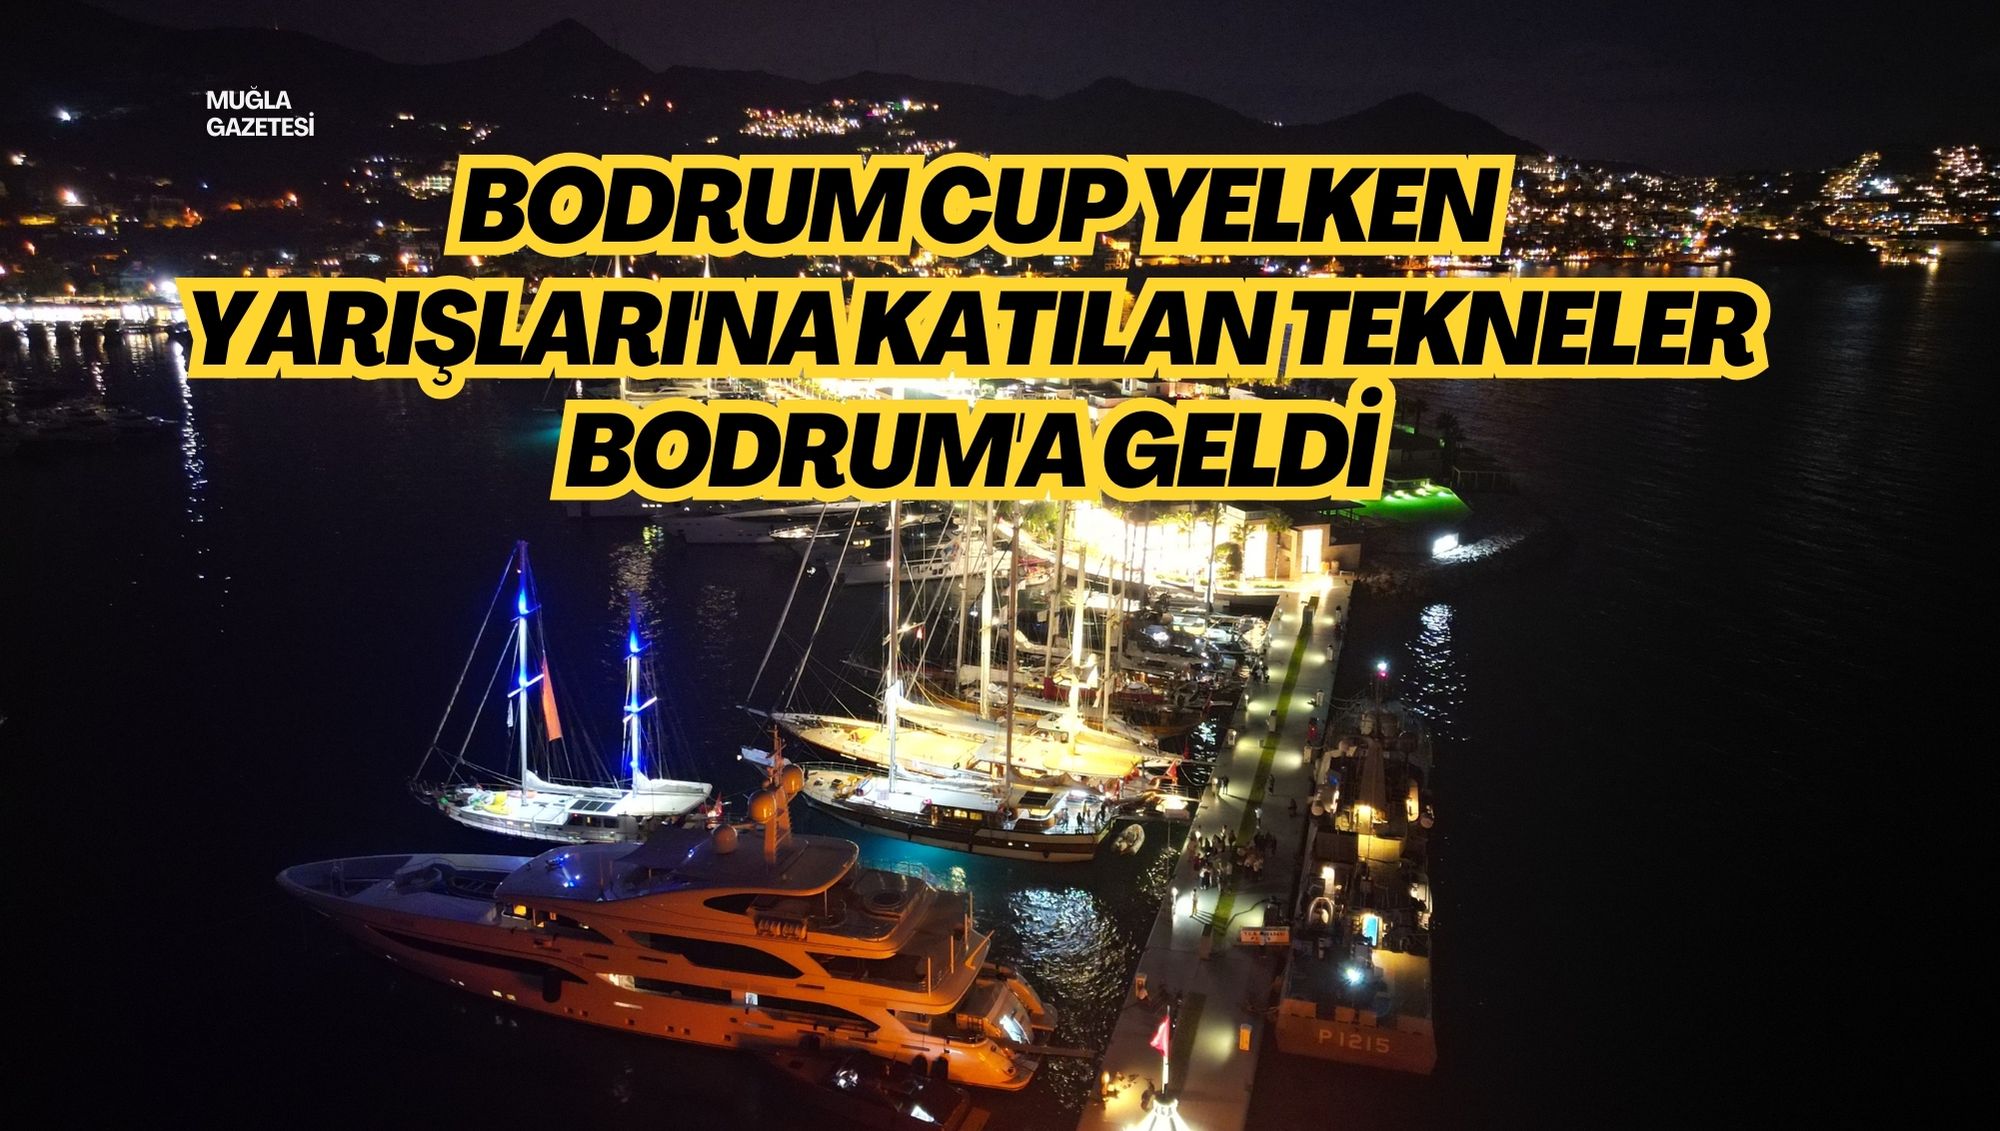 BODRUM CUP YELKEN YARIŞLARI'NA KATILAN TEKNELER BODRUM'A GELDİ